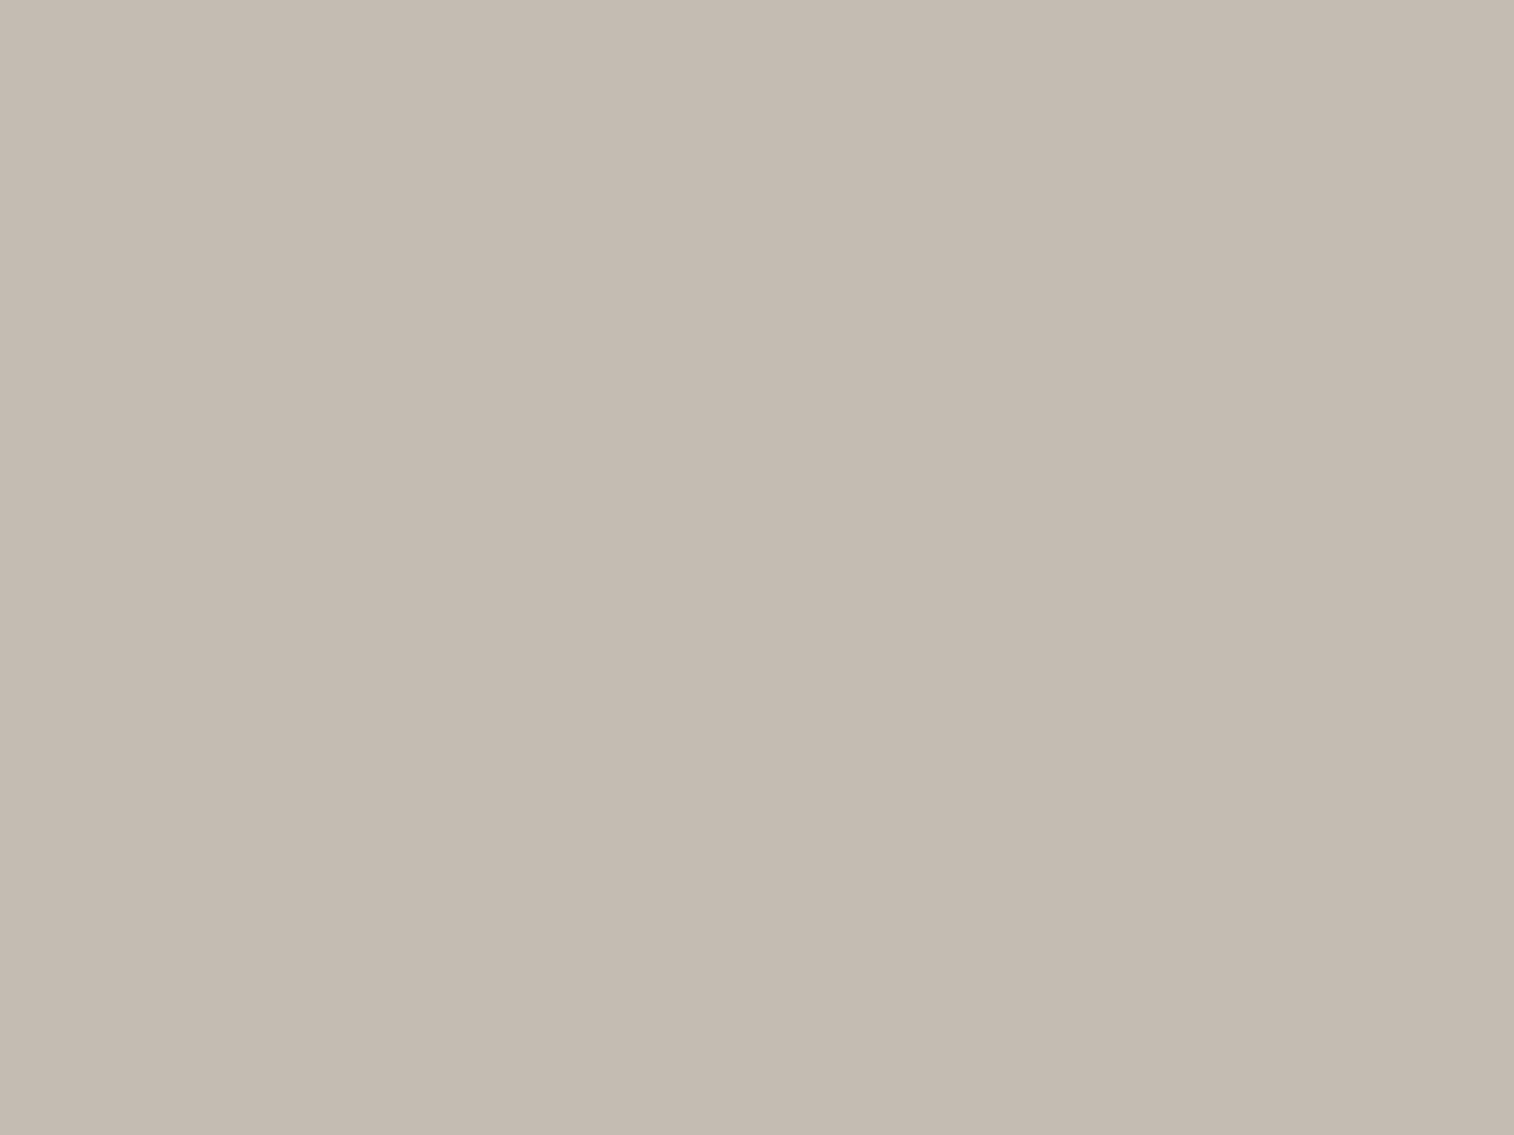 Подъем Царь-колокола из литейной ямы. Иллюстрация из книги Огюста Монферрана «Описание большого колокола в Москве», 1840